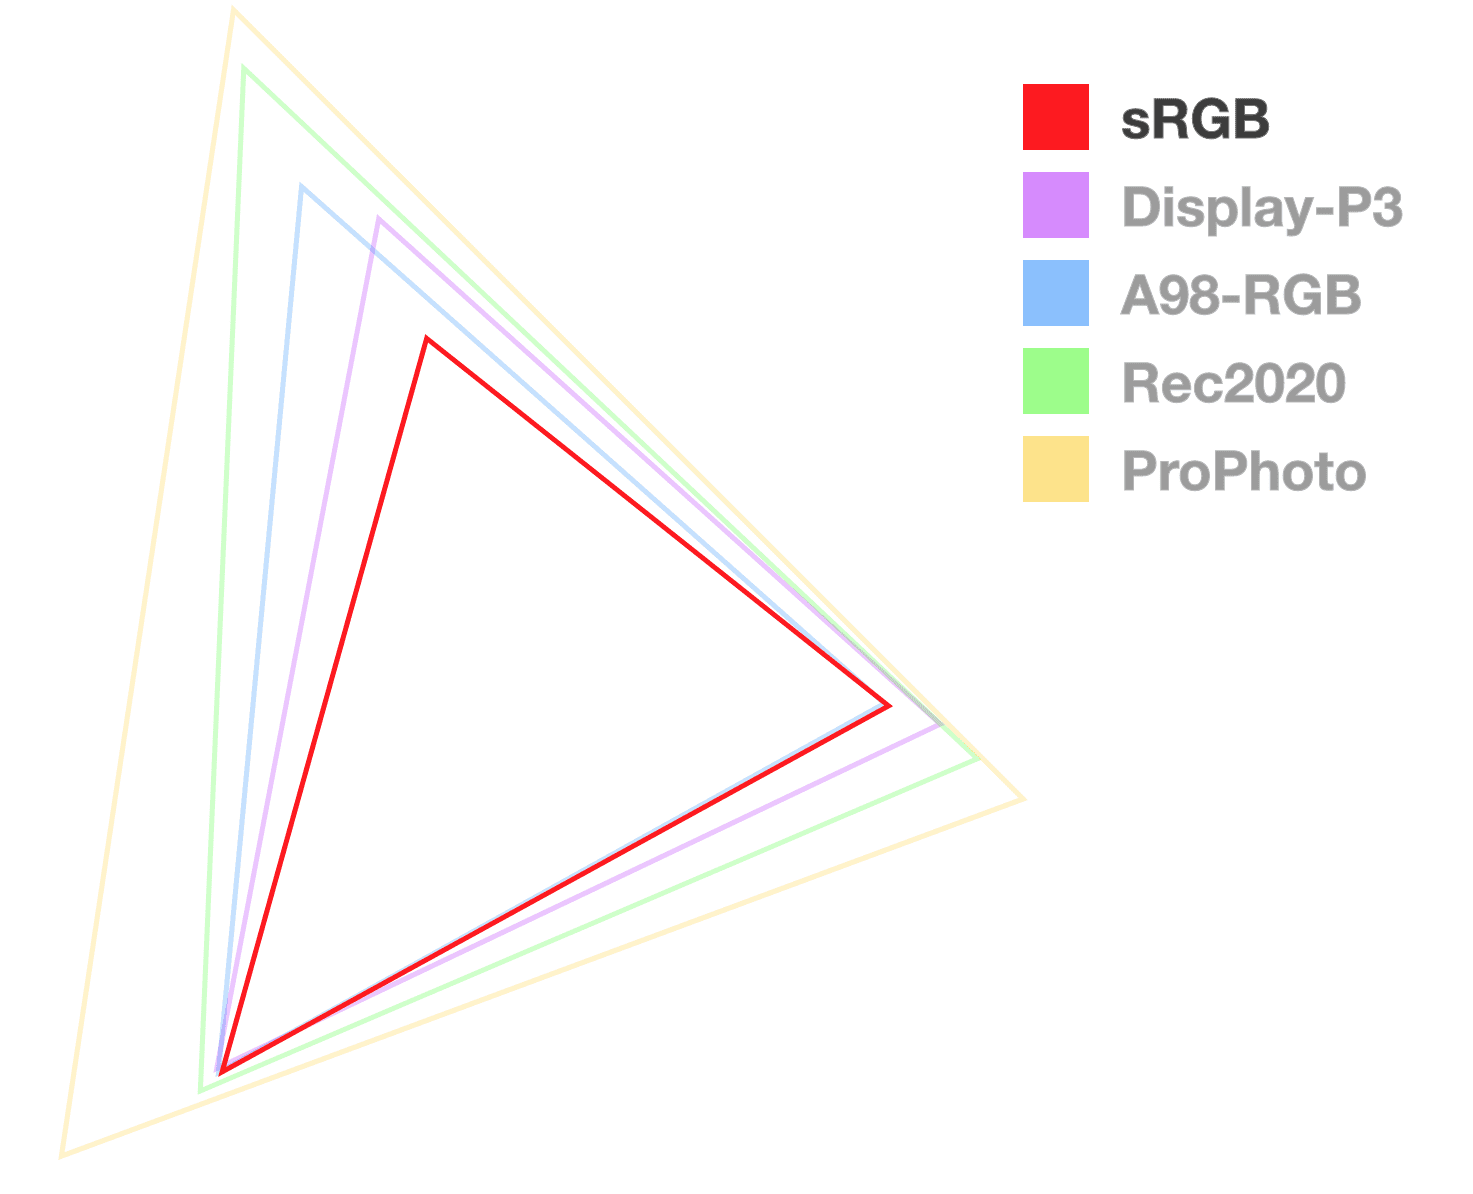 مثلث sRGB هو الوحيد التعتيمي تمامًا، للمساعدة في تصور حجم السلسلة.